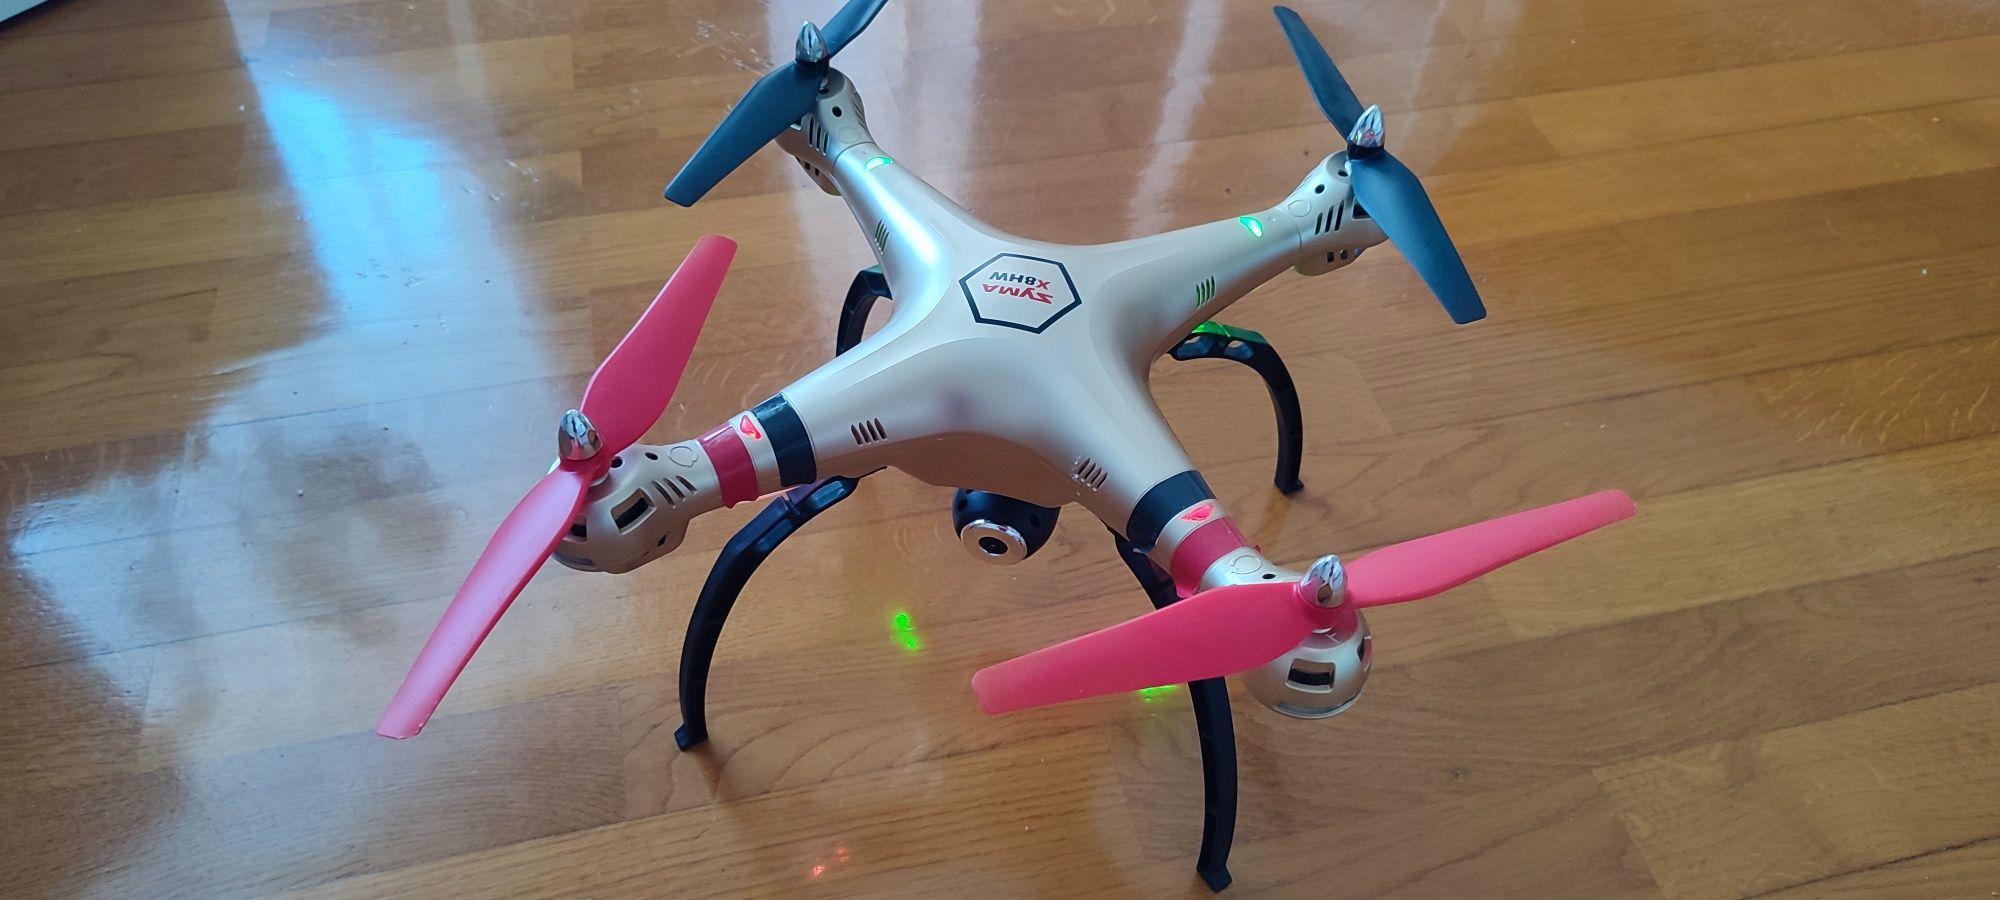 Drone syma X8HW ótimo estado